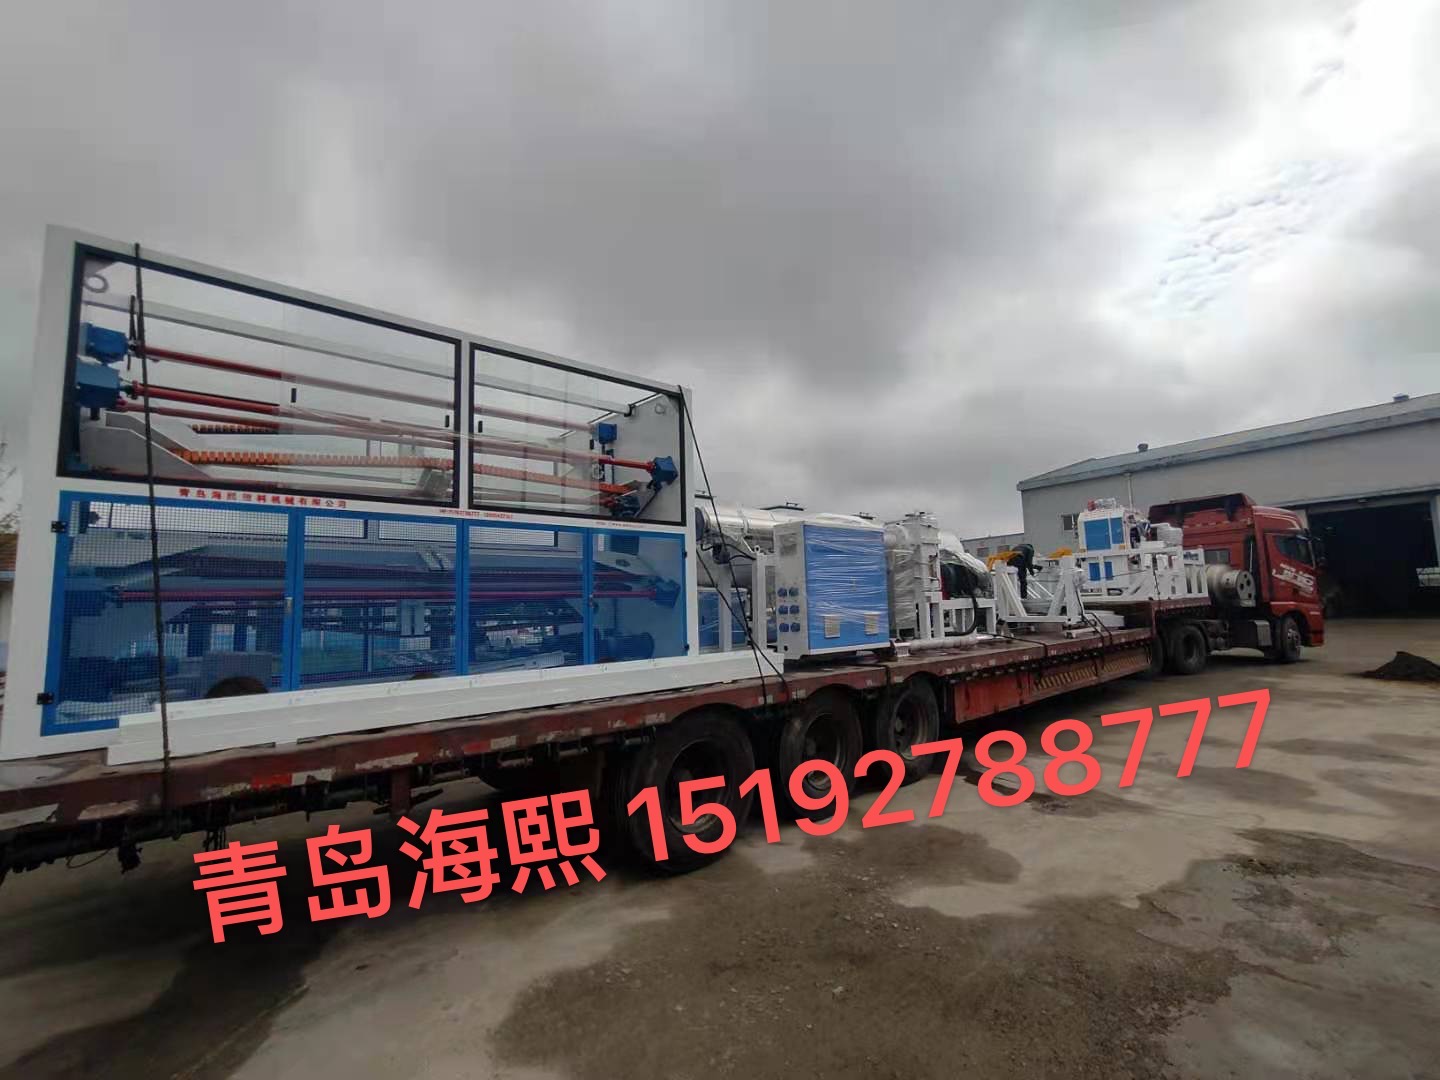 Shanxi Yibisheng Pipe Industry Co., Ltd